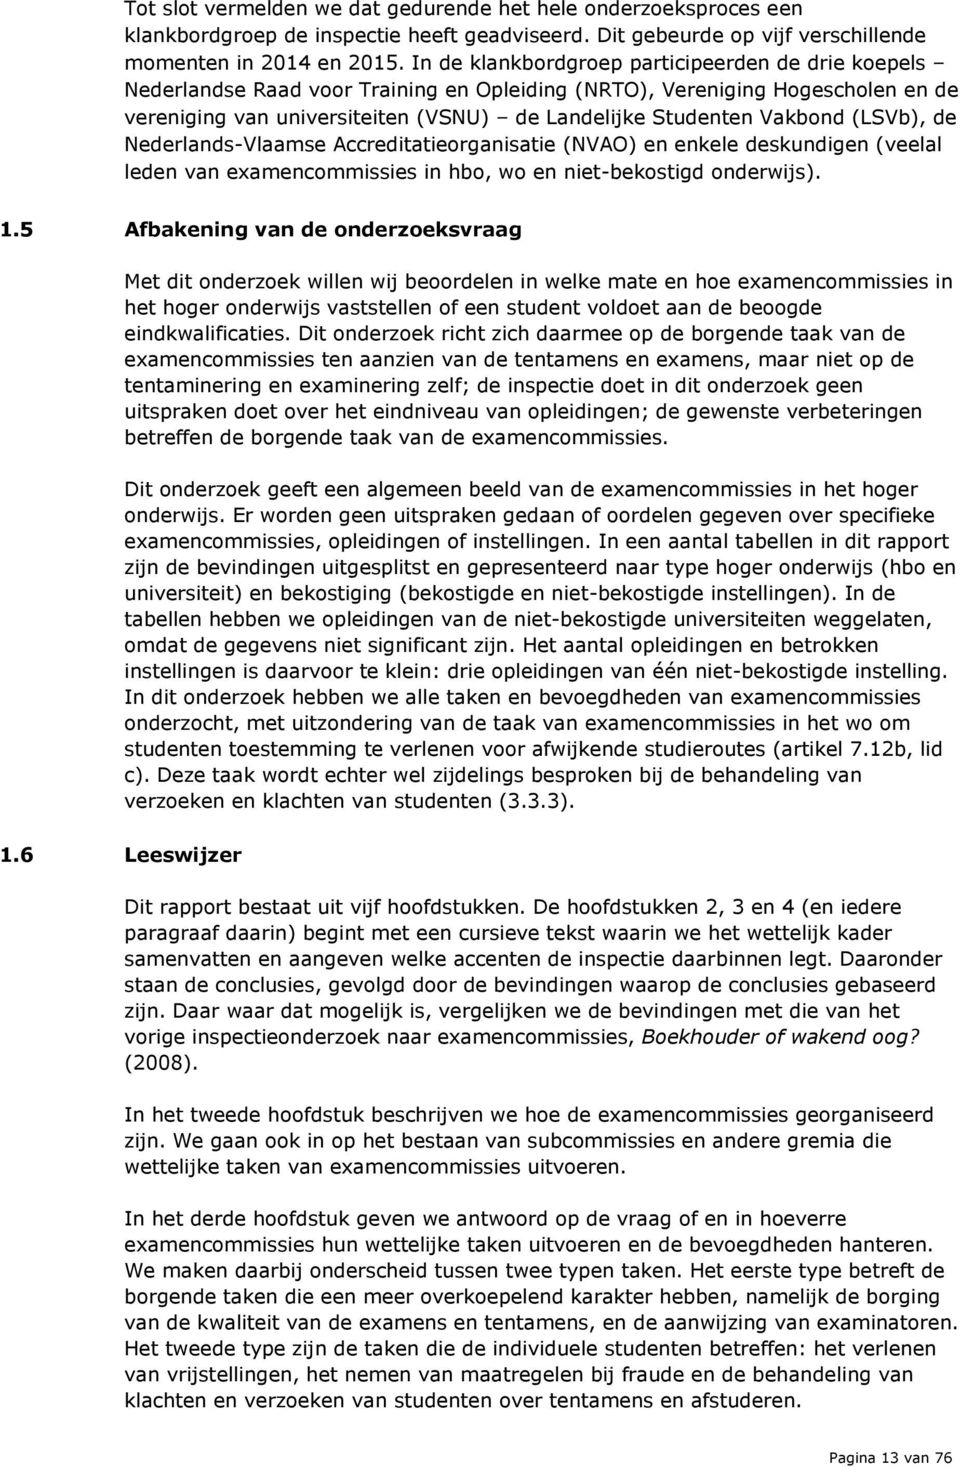 Vakbond (LSVb), de Nederlands-Vlaamse Accreditatieorganisatie (NVAO) en enkele deskundigen (veelal leden van examencommissies in hbo, wo en niet-bekostigd onderwijs). 1.